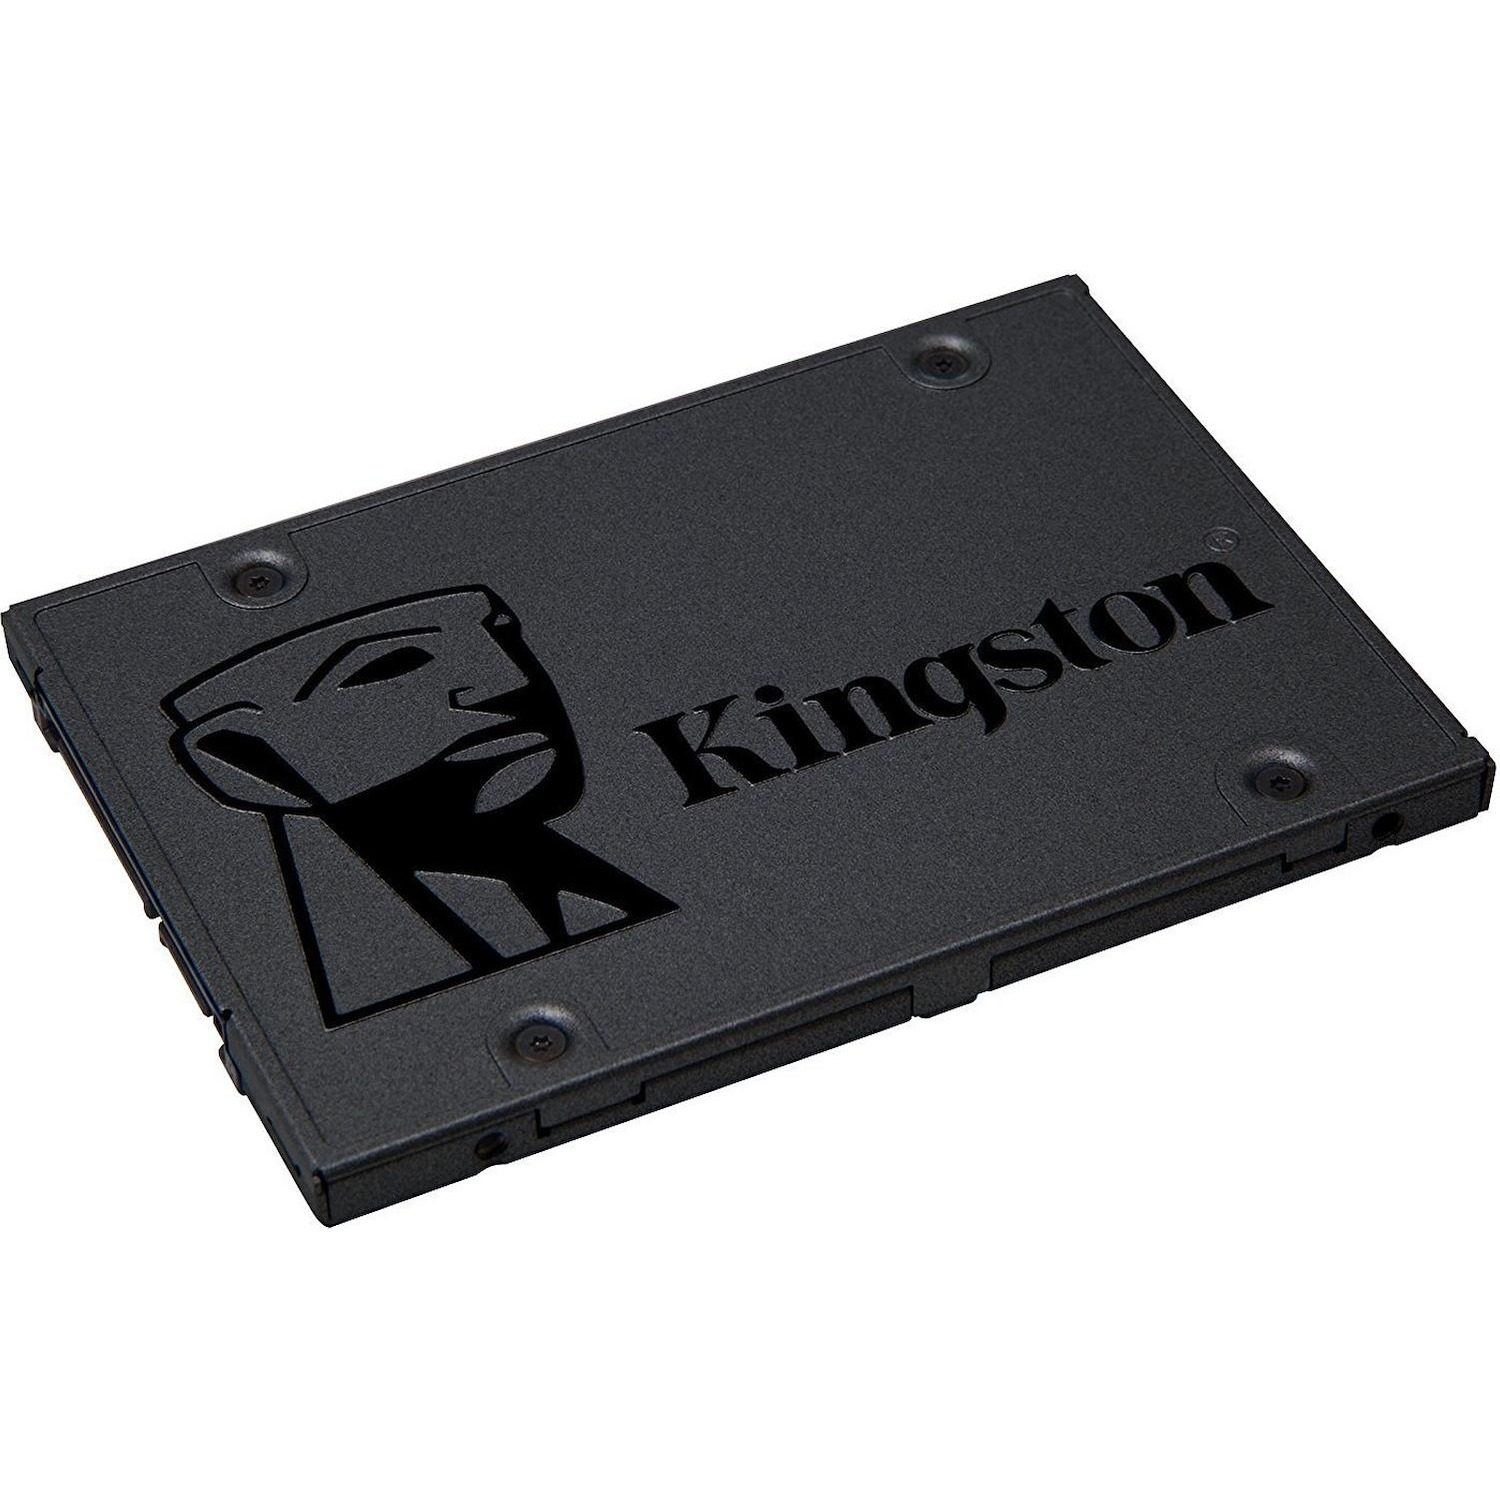 Immagine per HD SSD Kingston 480GB Sata 3 2,5" da DIMOStore